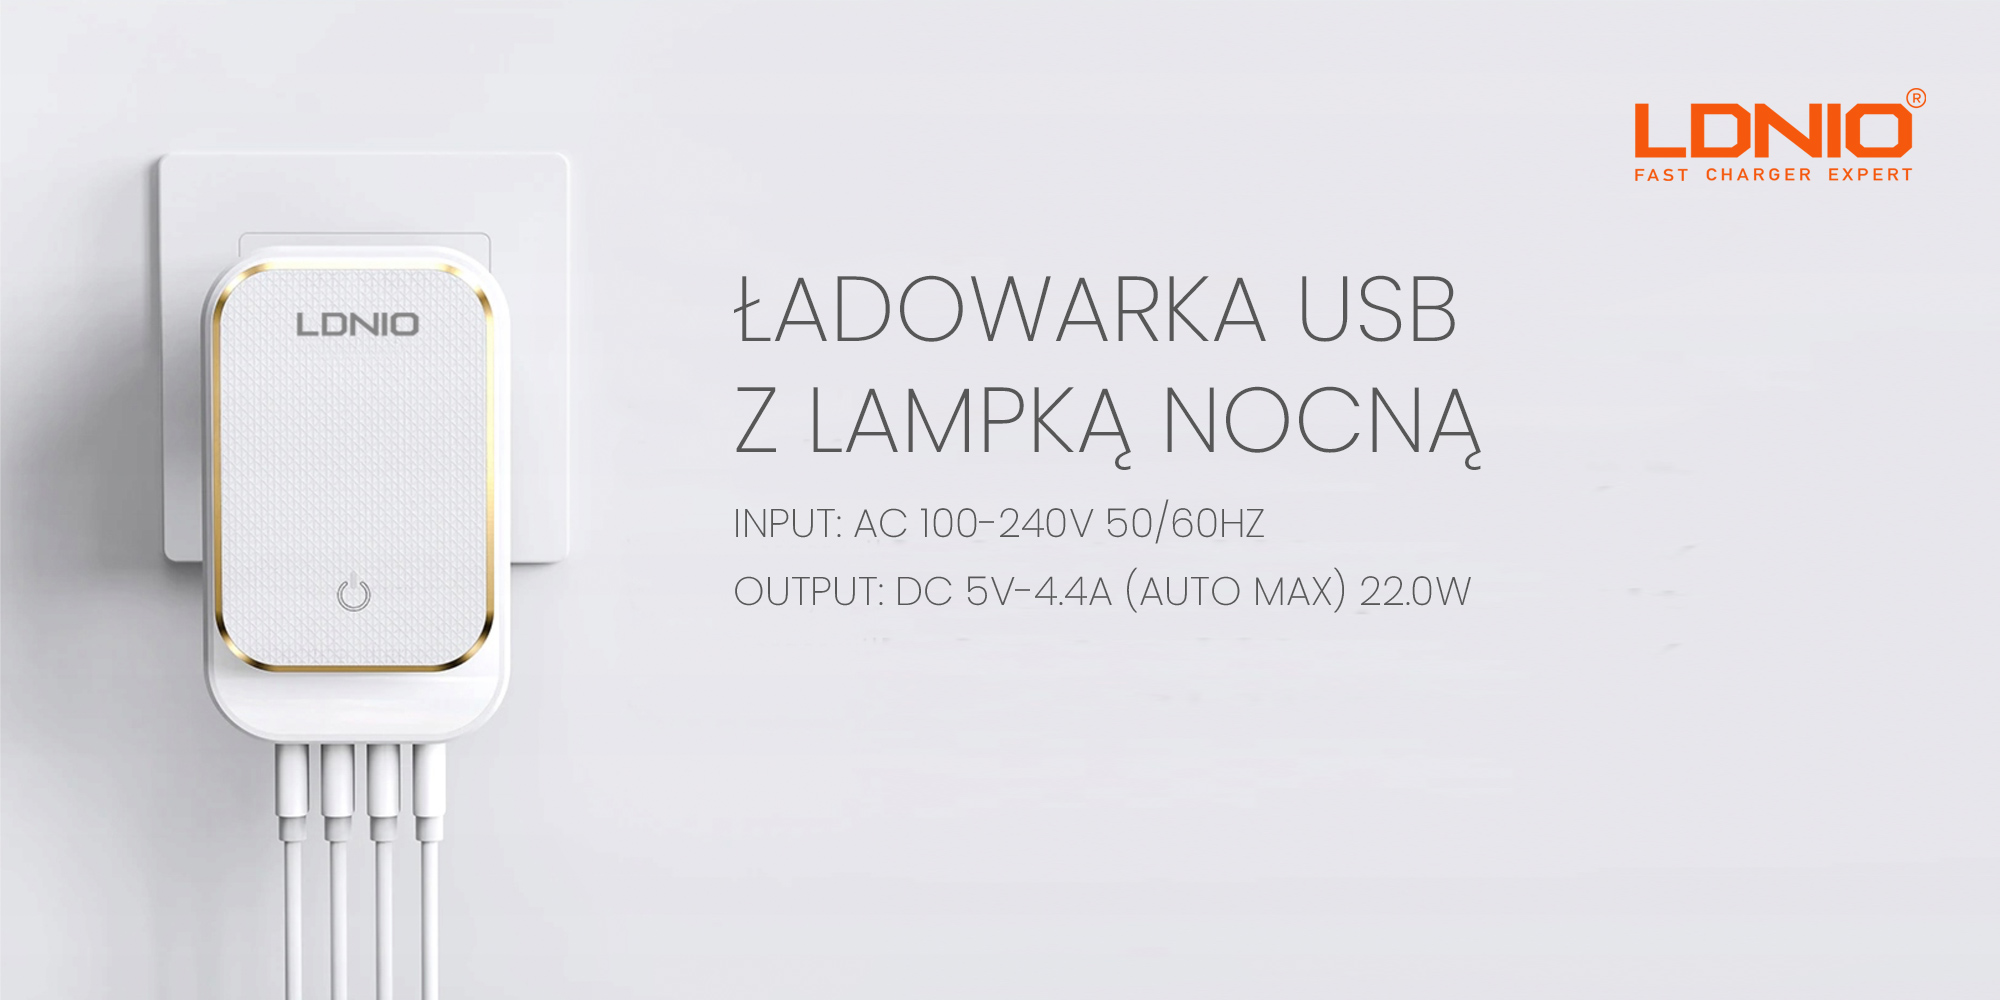 Ładowarka USB Ldnio A4405 - 4x USB z lampką nocną LED